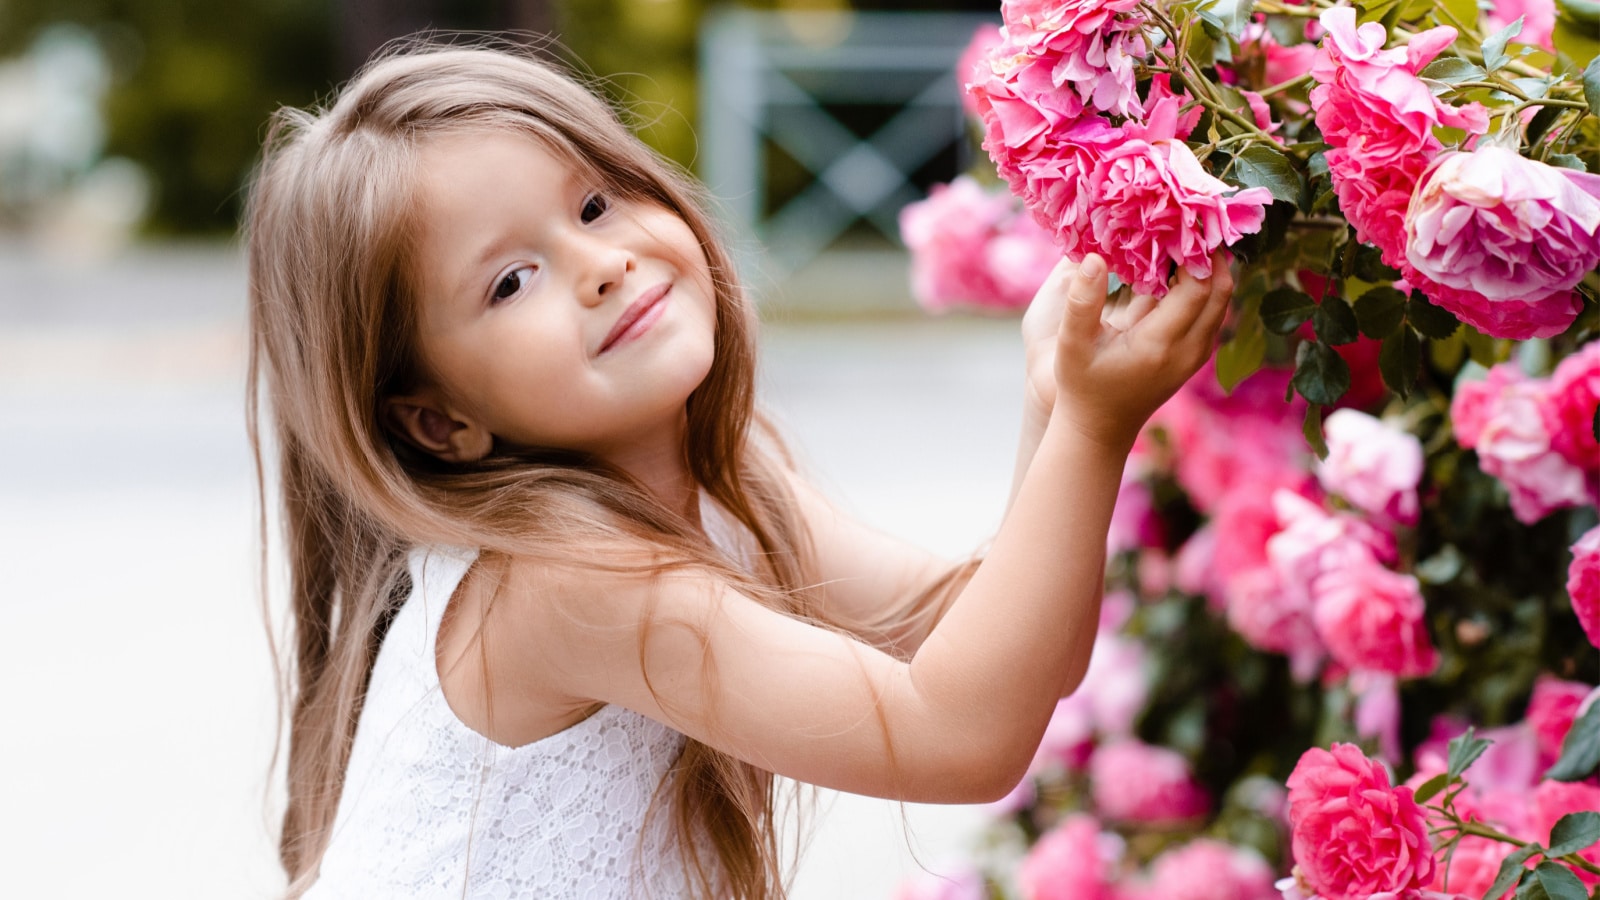 little girl picking flowers